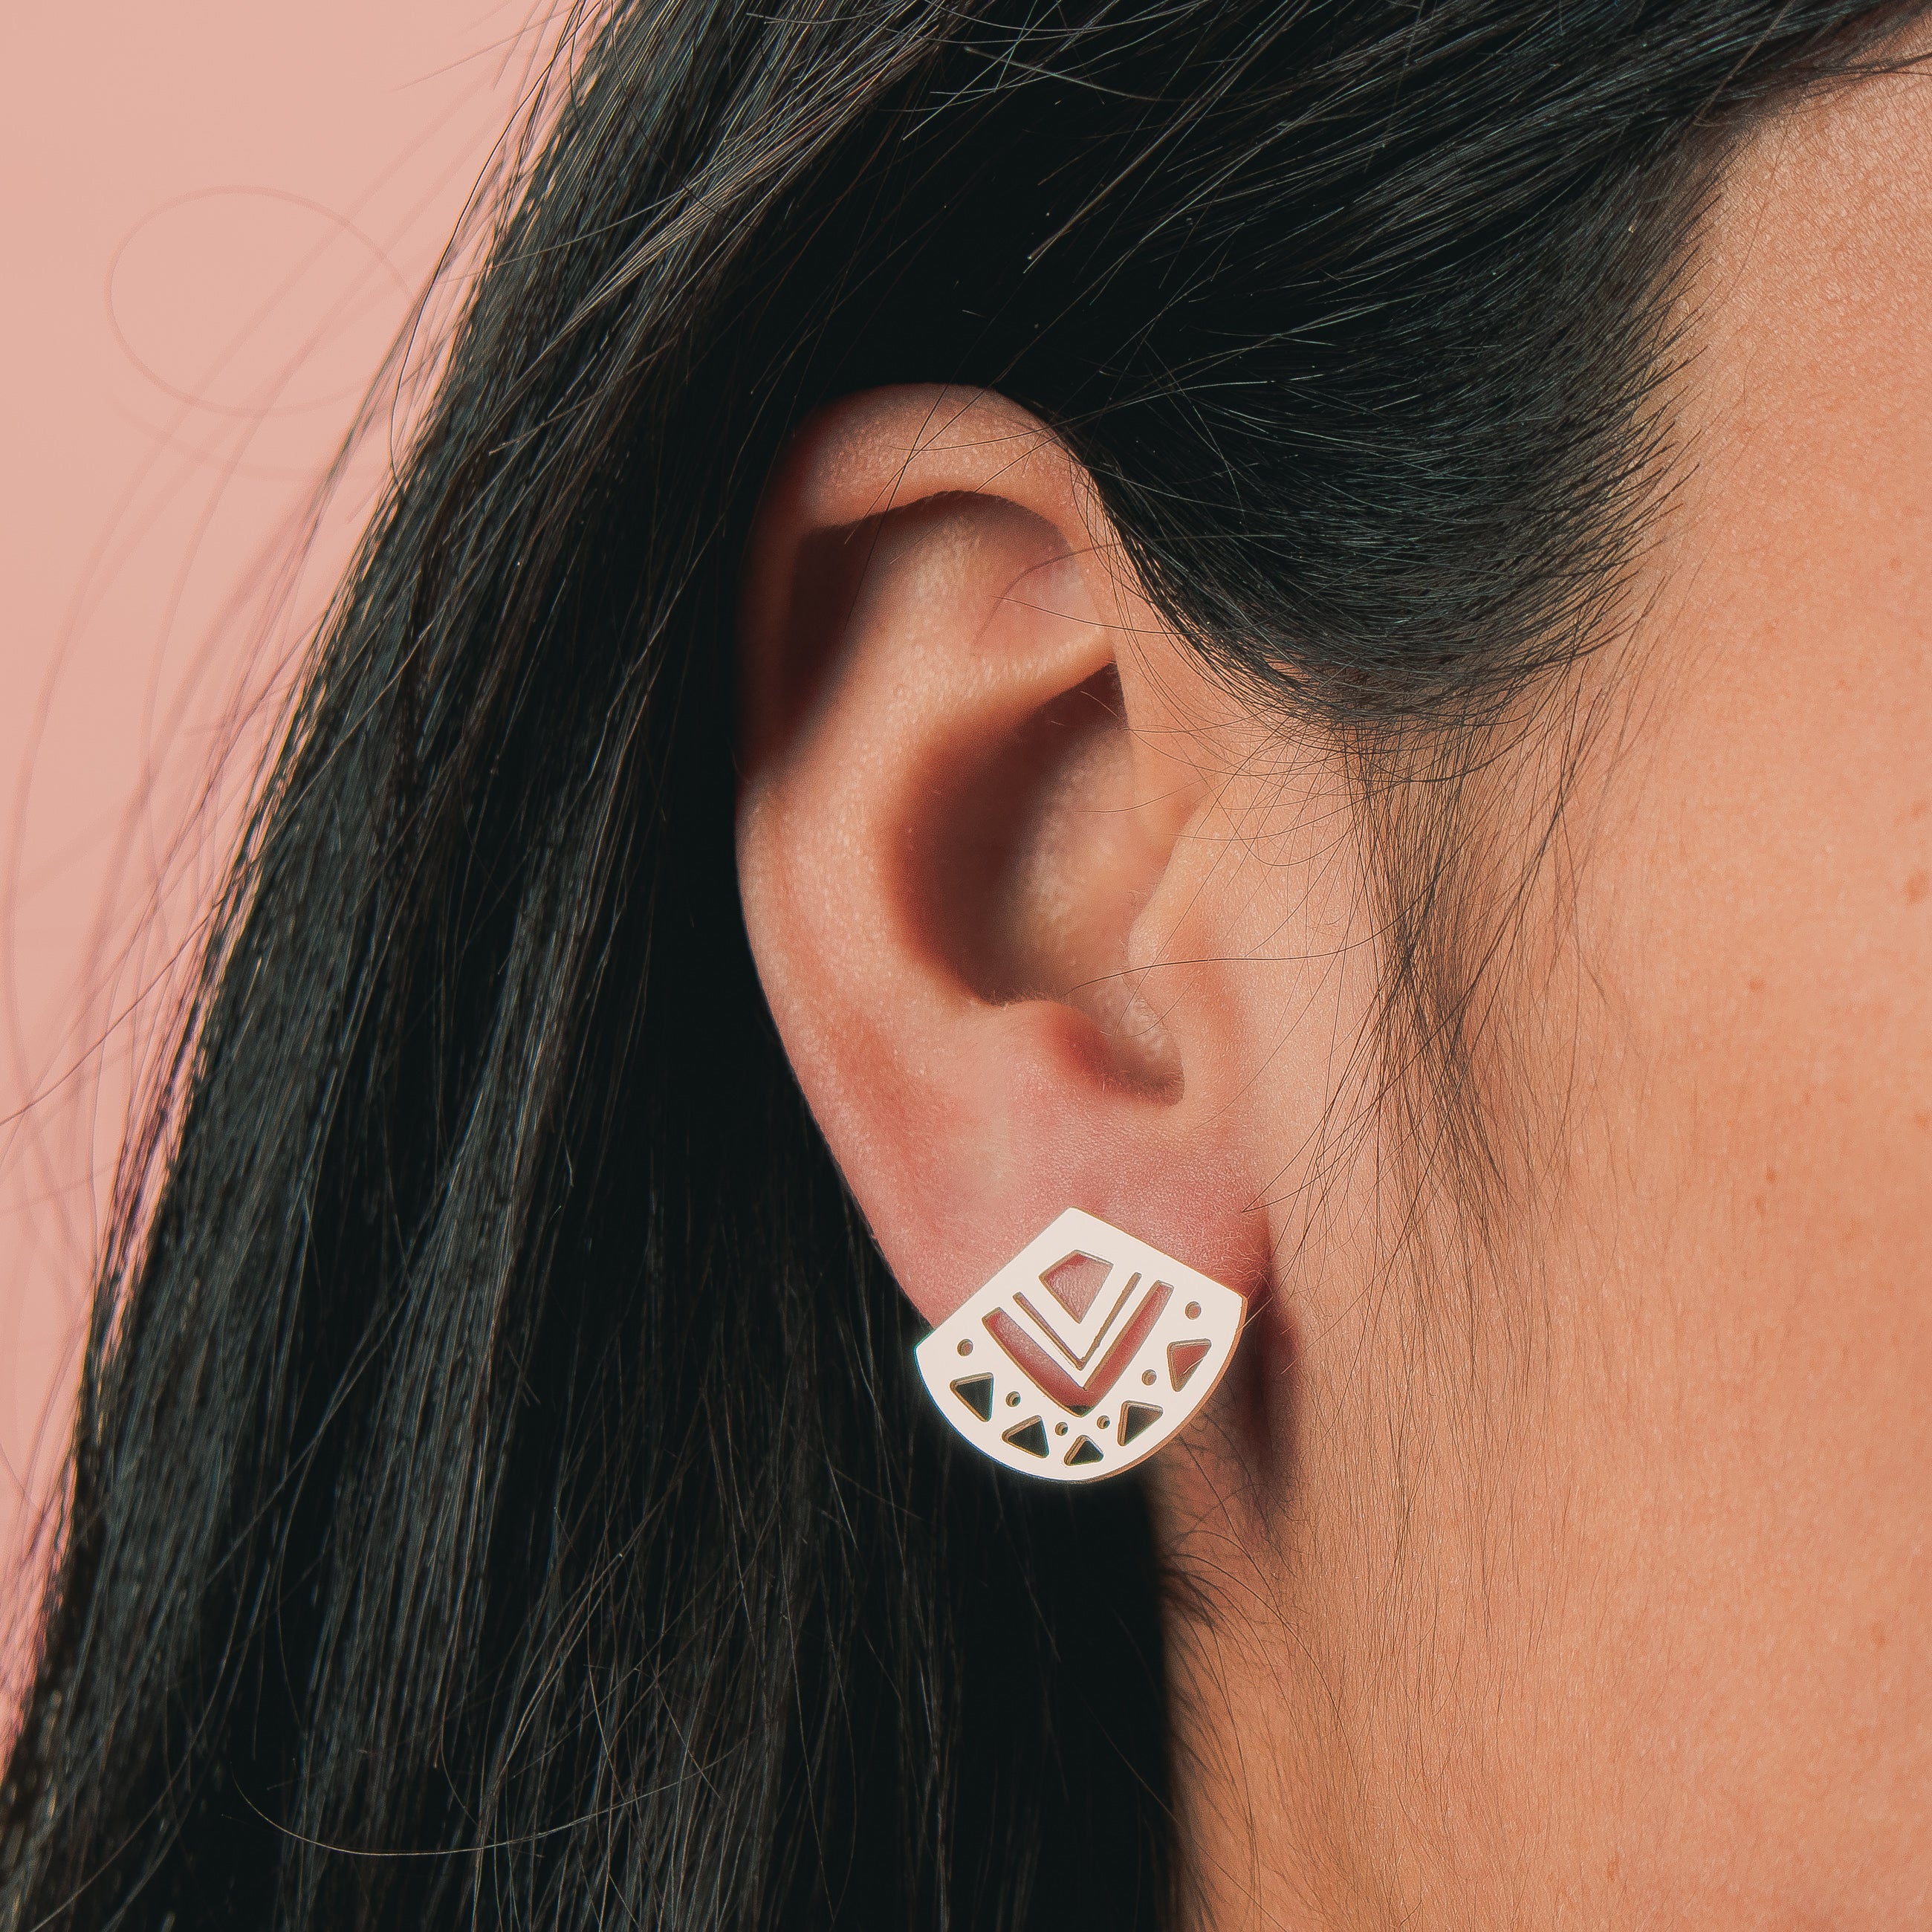 Myra Stud Earrings - Melanie Golden Jewelry - _badge_NEW, earrings, new, stud, stud earrings, studs